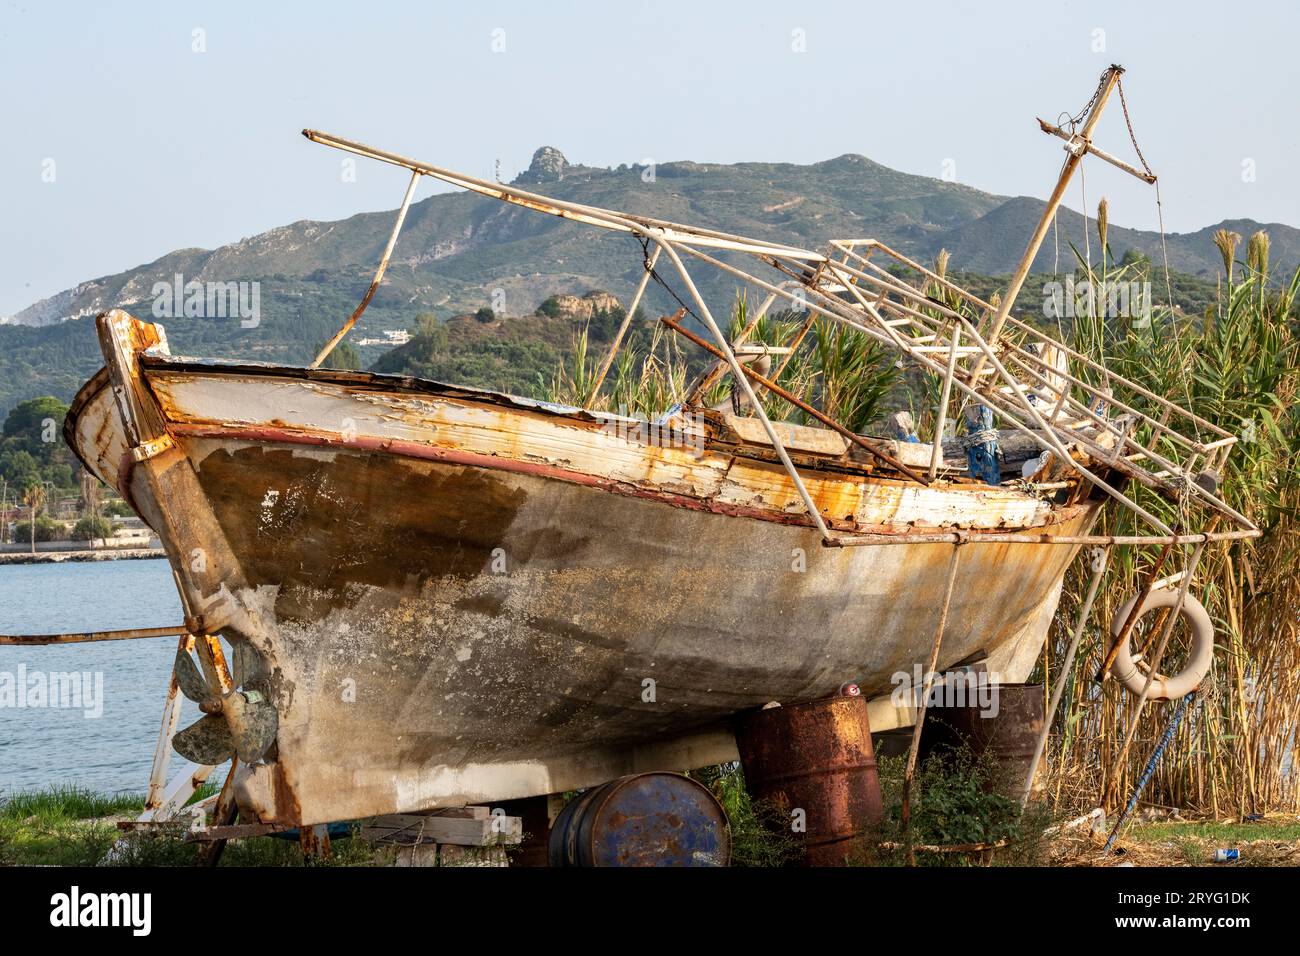 Altes Schiffswrack oder zerstörtes, heruntergekommenes Boot auf dem feststehenden Hafen von zante oder zakynthos in griechenland. Stockfoto